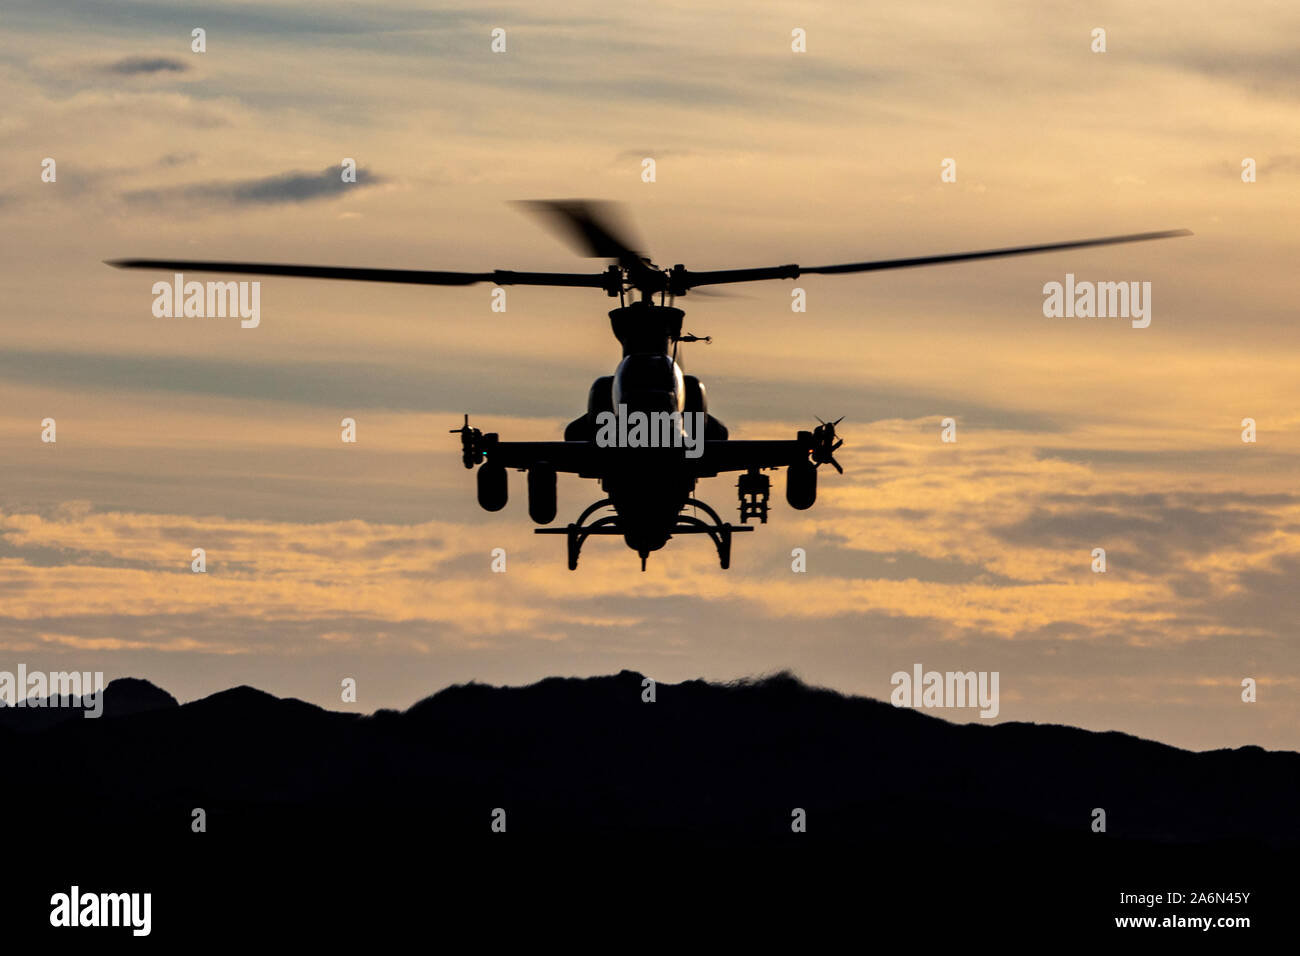 Un Corps des Marines américains AH-1Z Viper aéronefs affectés à l'Aviation maritime Premier escadron d'armes et tactiques (MAWTS-1), effectue un exercice tactique assault support au cours armes et tactiques cours Instructeur (WTI) 1-20 au tir aérien de montagne de chocolat, en Californie, le 16 octobre 2019. Le WTI est une formation de 7 semaines organisé par Marine Aviation armes et tactiques d'un escadron (MAWTS-1), qui met l'intégration opérationnelle des six fonctions de l'aviation du Corps des Marines à l'appui d'une masse d'Air Maritime Task Force. Le WTI fournit également une formation tactique avancé normalisés et de certification o Banque D'Images